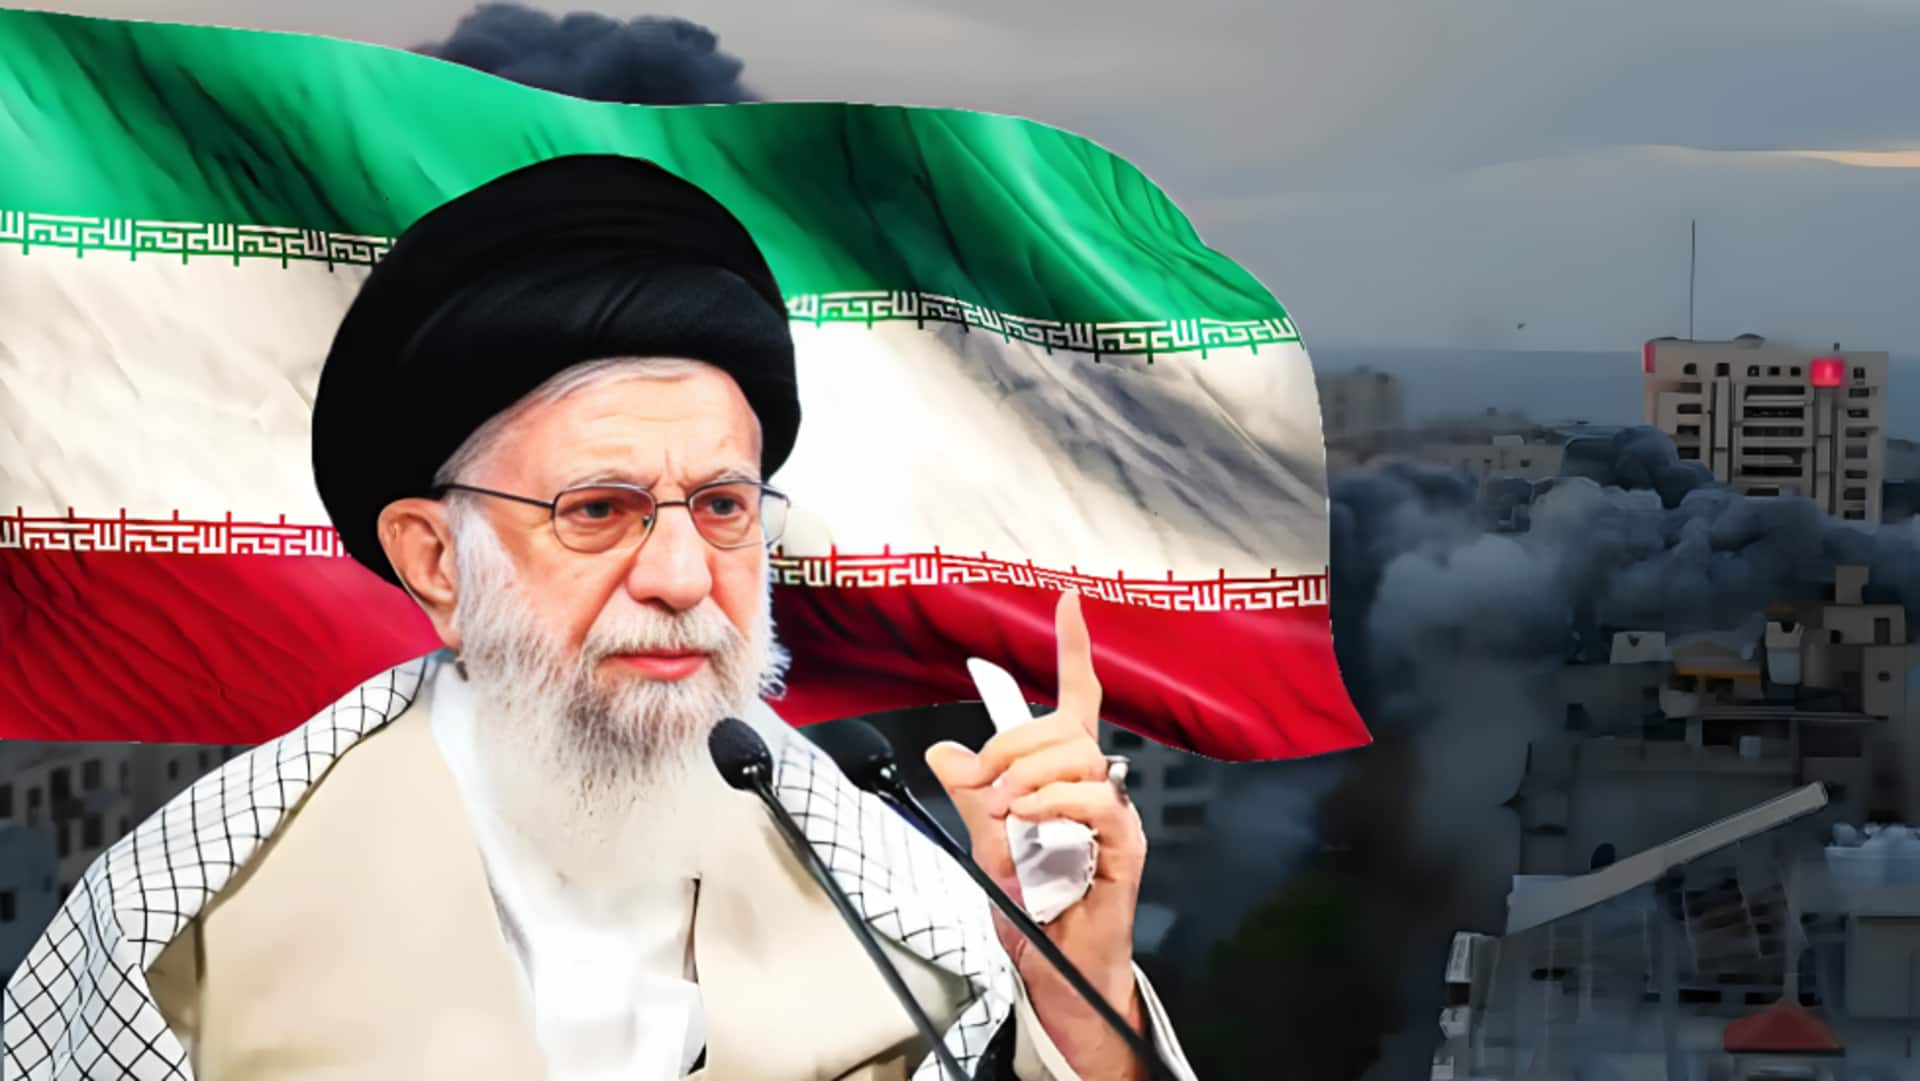 ईरानी दूतावास हमला: ईरान के सर्वोच्च नेता खामनेई बोले- बदला लेंगे, इजरायल को दंडित किया जाएगा